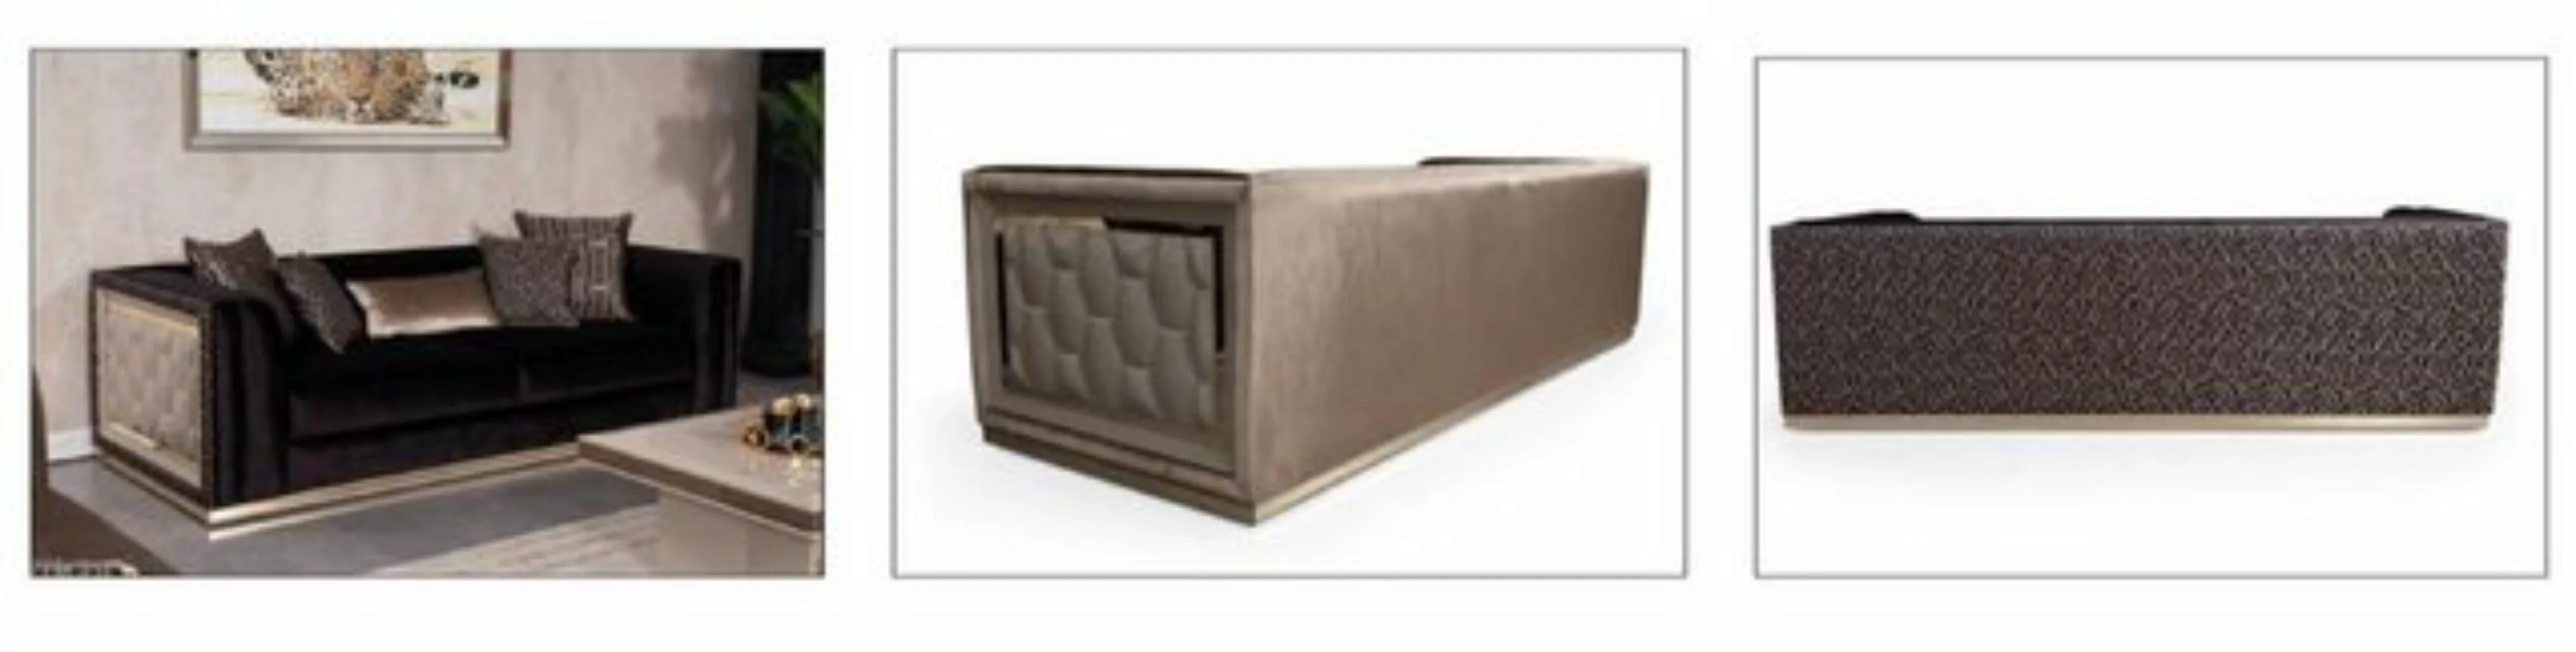 JVmoebel Sofa Sofa 3 Sitzer Couch Holz möbel Sofas Couch italienischer Stil günstig online kaufen